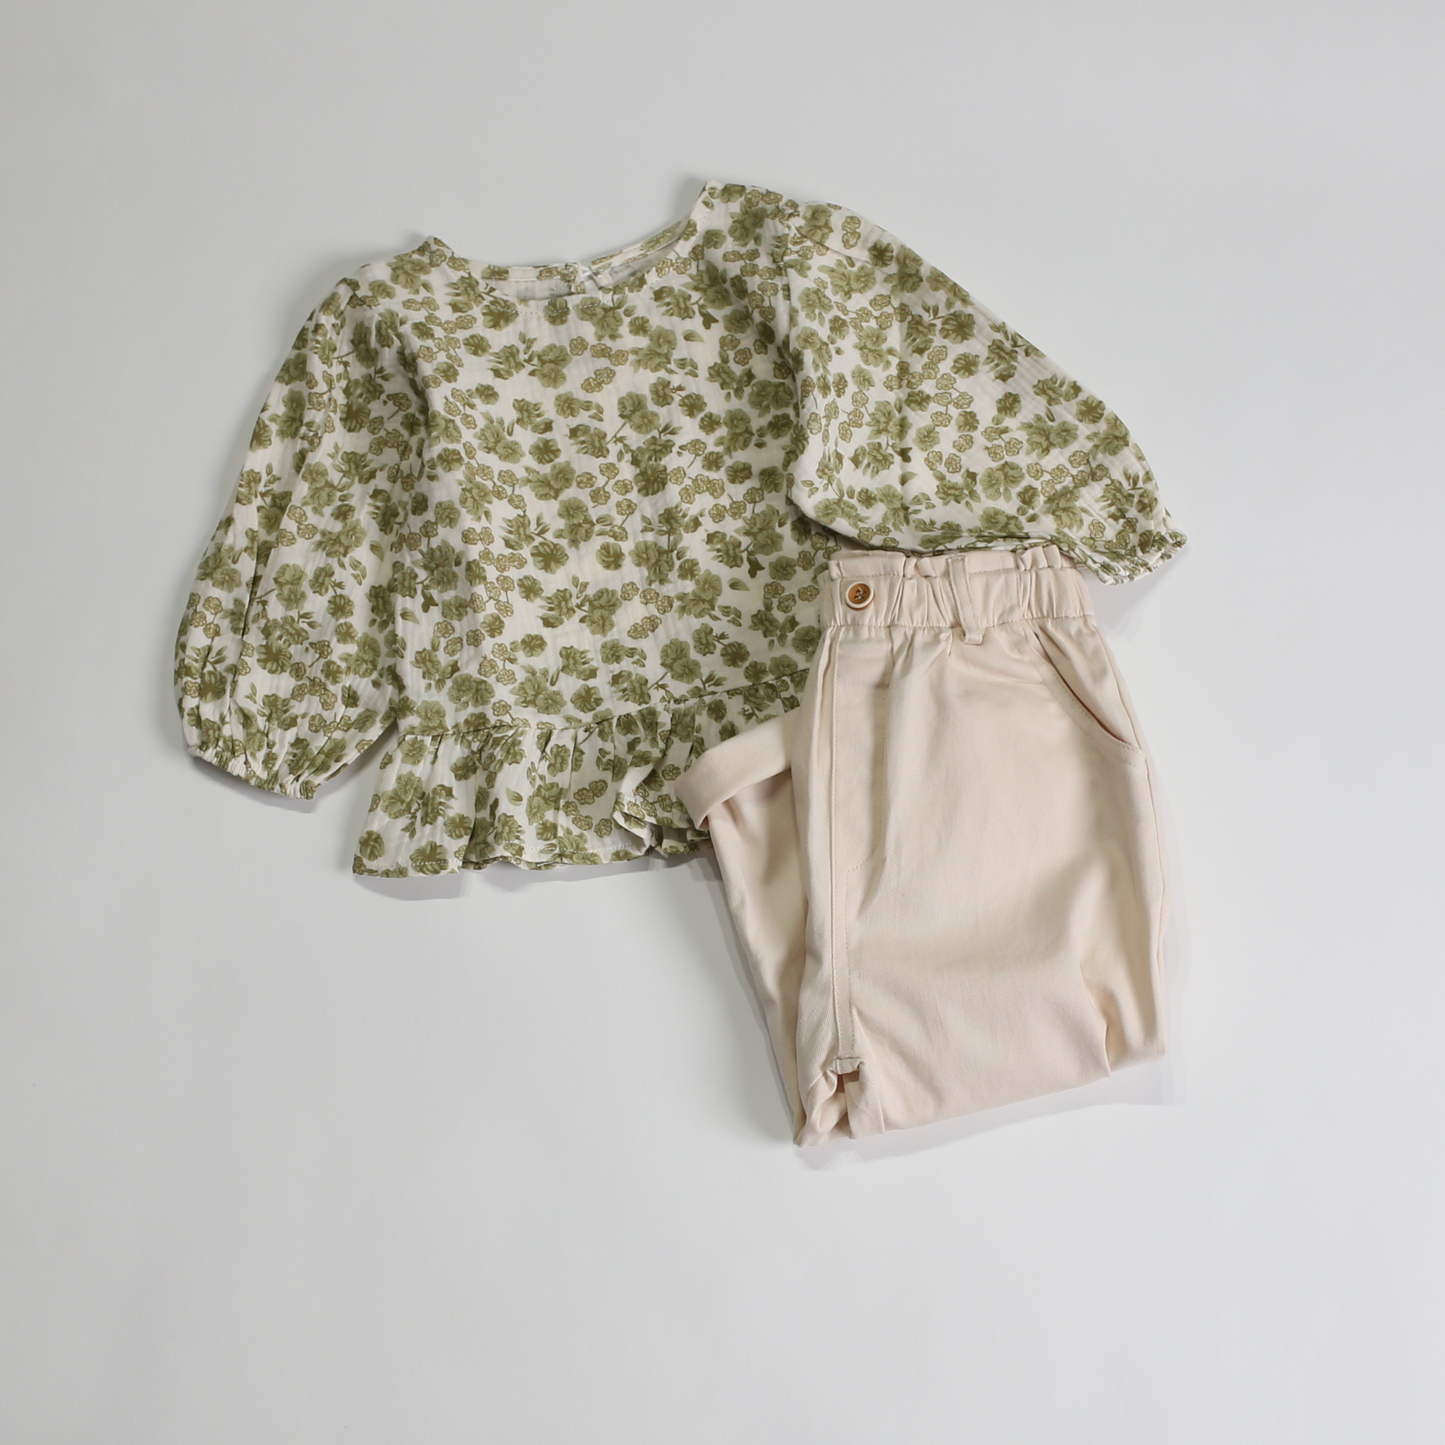 グリーンフラワー ブラウス / green flower blouse (こども服) - kids clothes shop GUZUGUZU